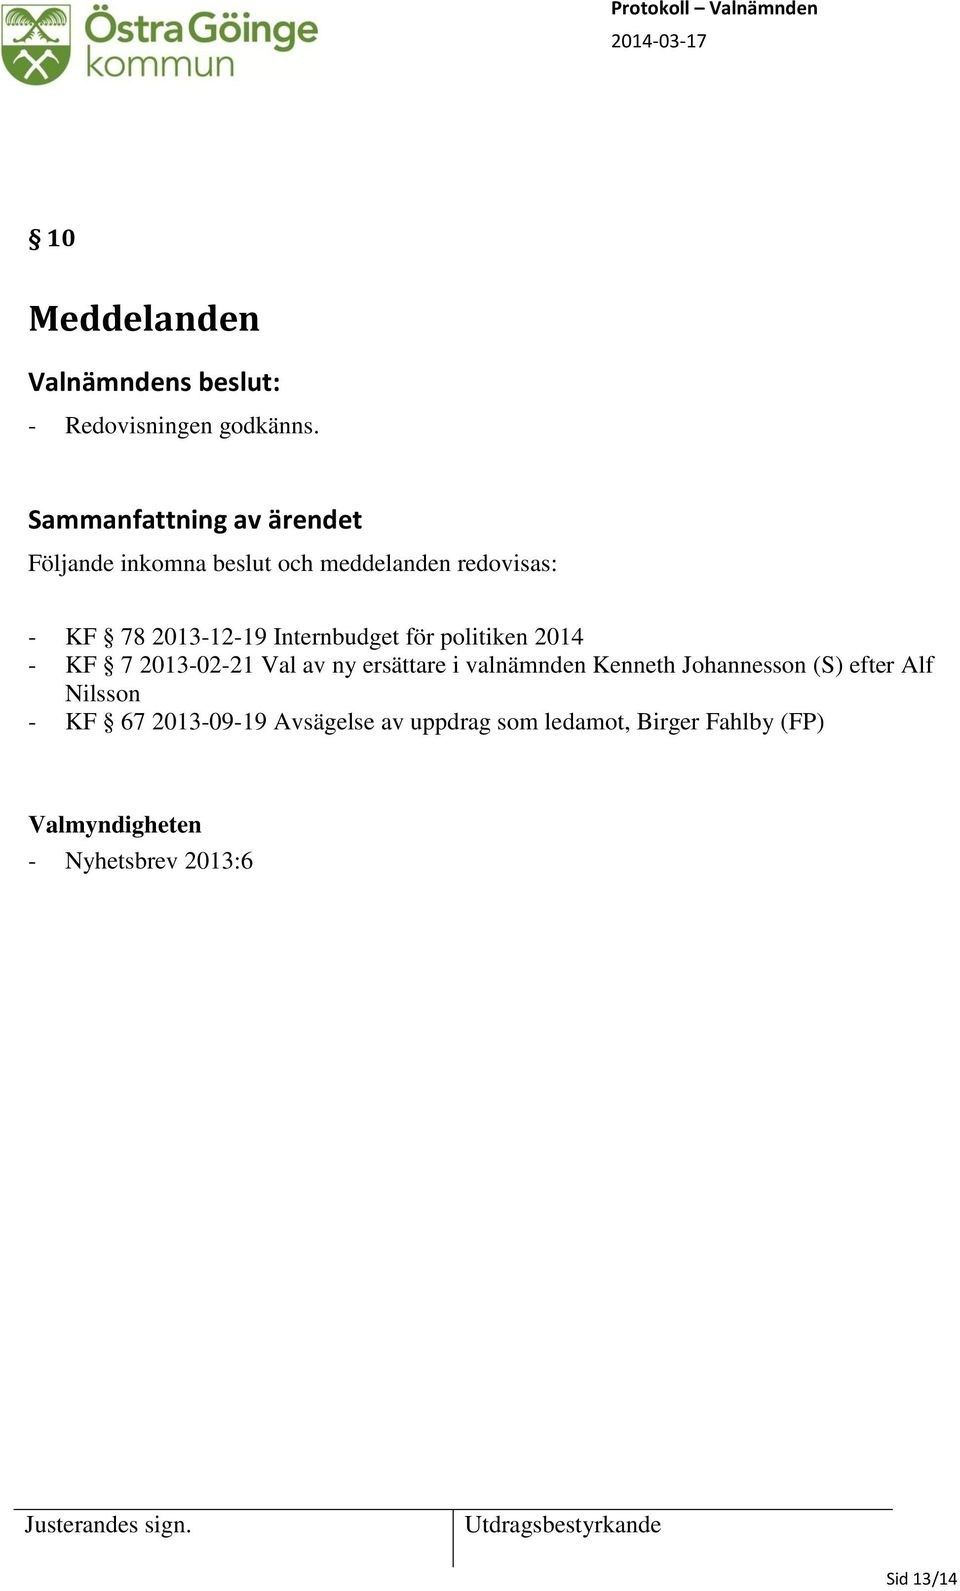 politiken 2014 - KF 7 2013-02-21 Val av ny ersättare i valnämnden Kenneth Johannesson